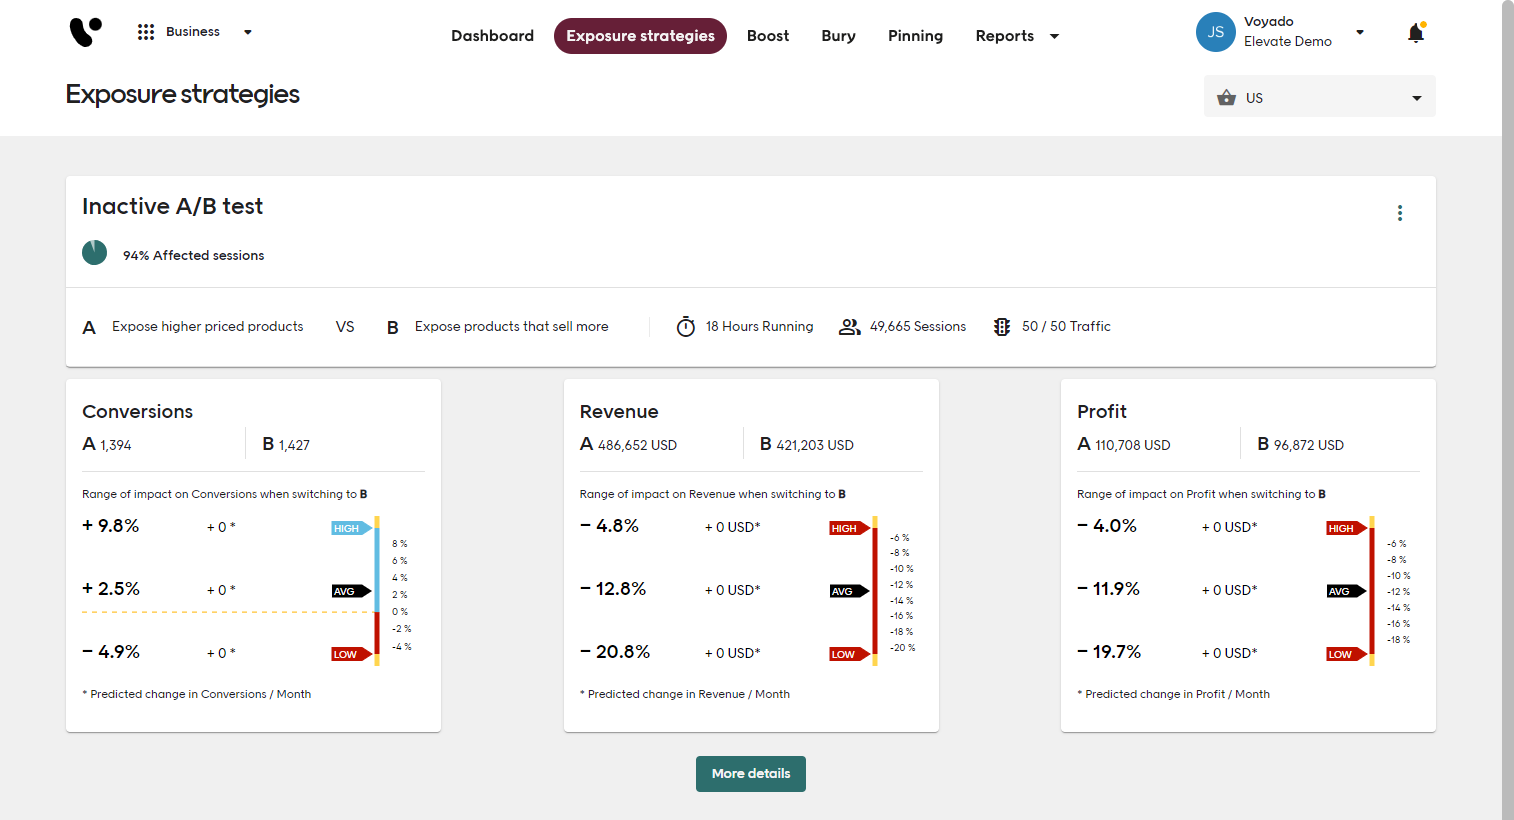 Screenshot of Voyado Elevate Business app Exposure strategies tab